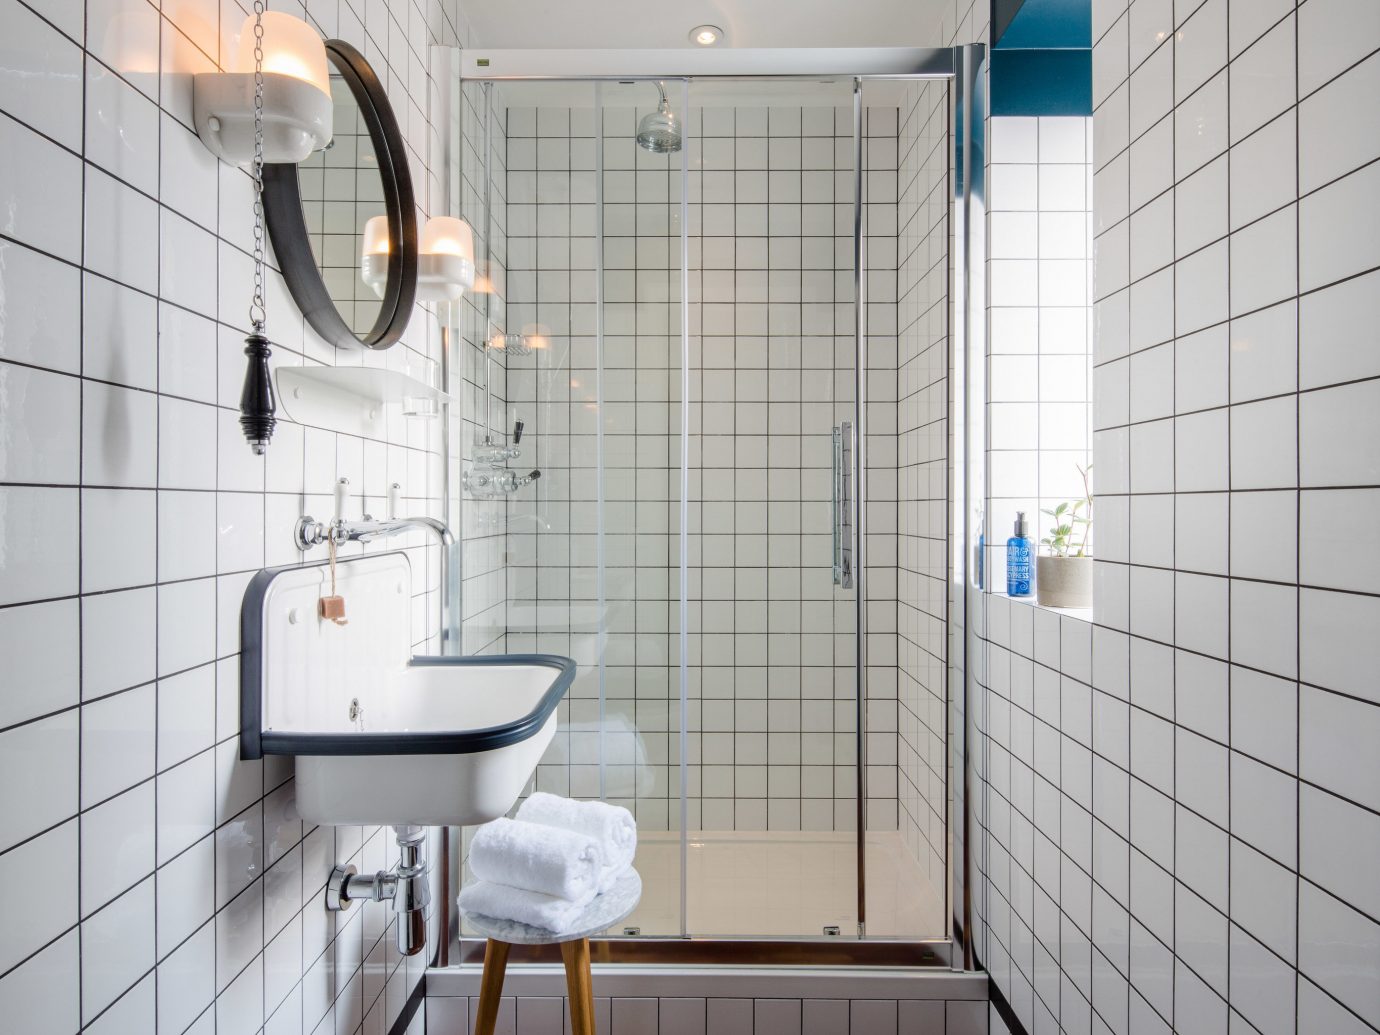 bathroom room tile wall interior design plumbing fixture floor flooring window toilet daylighting